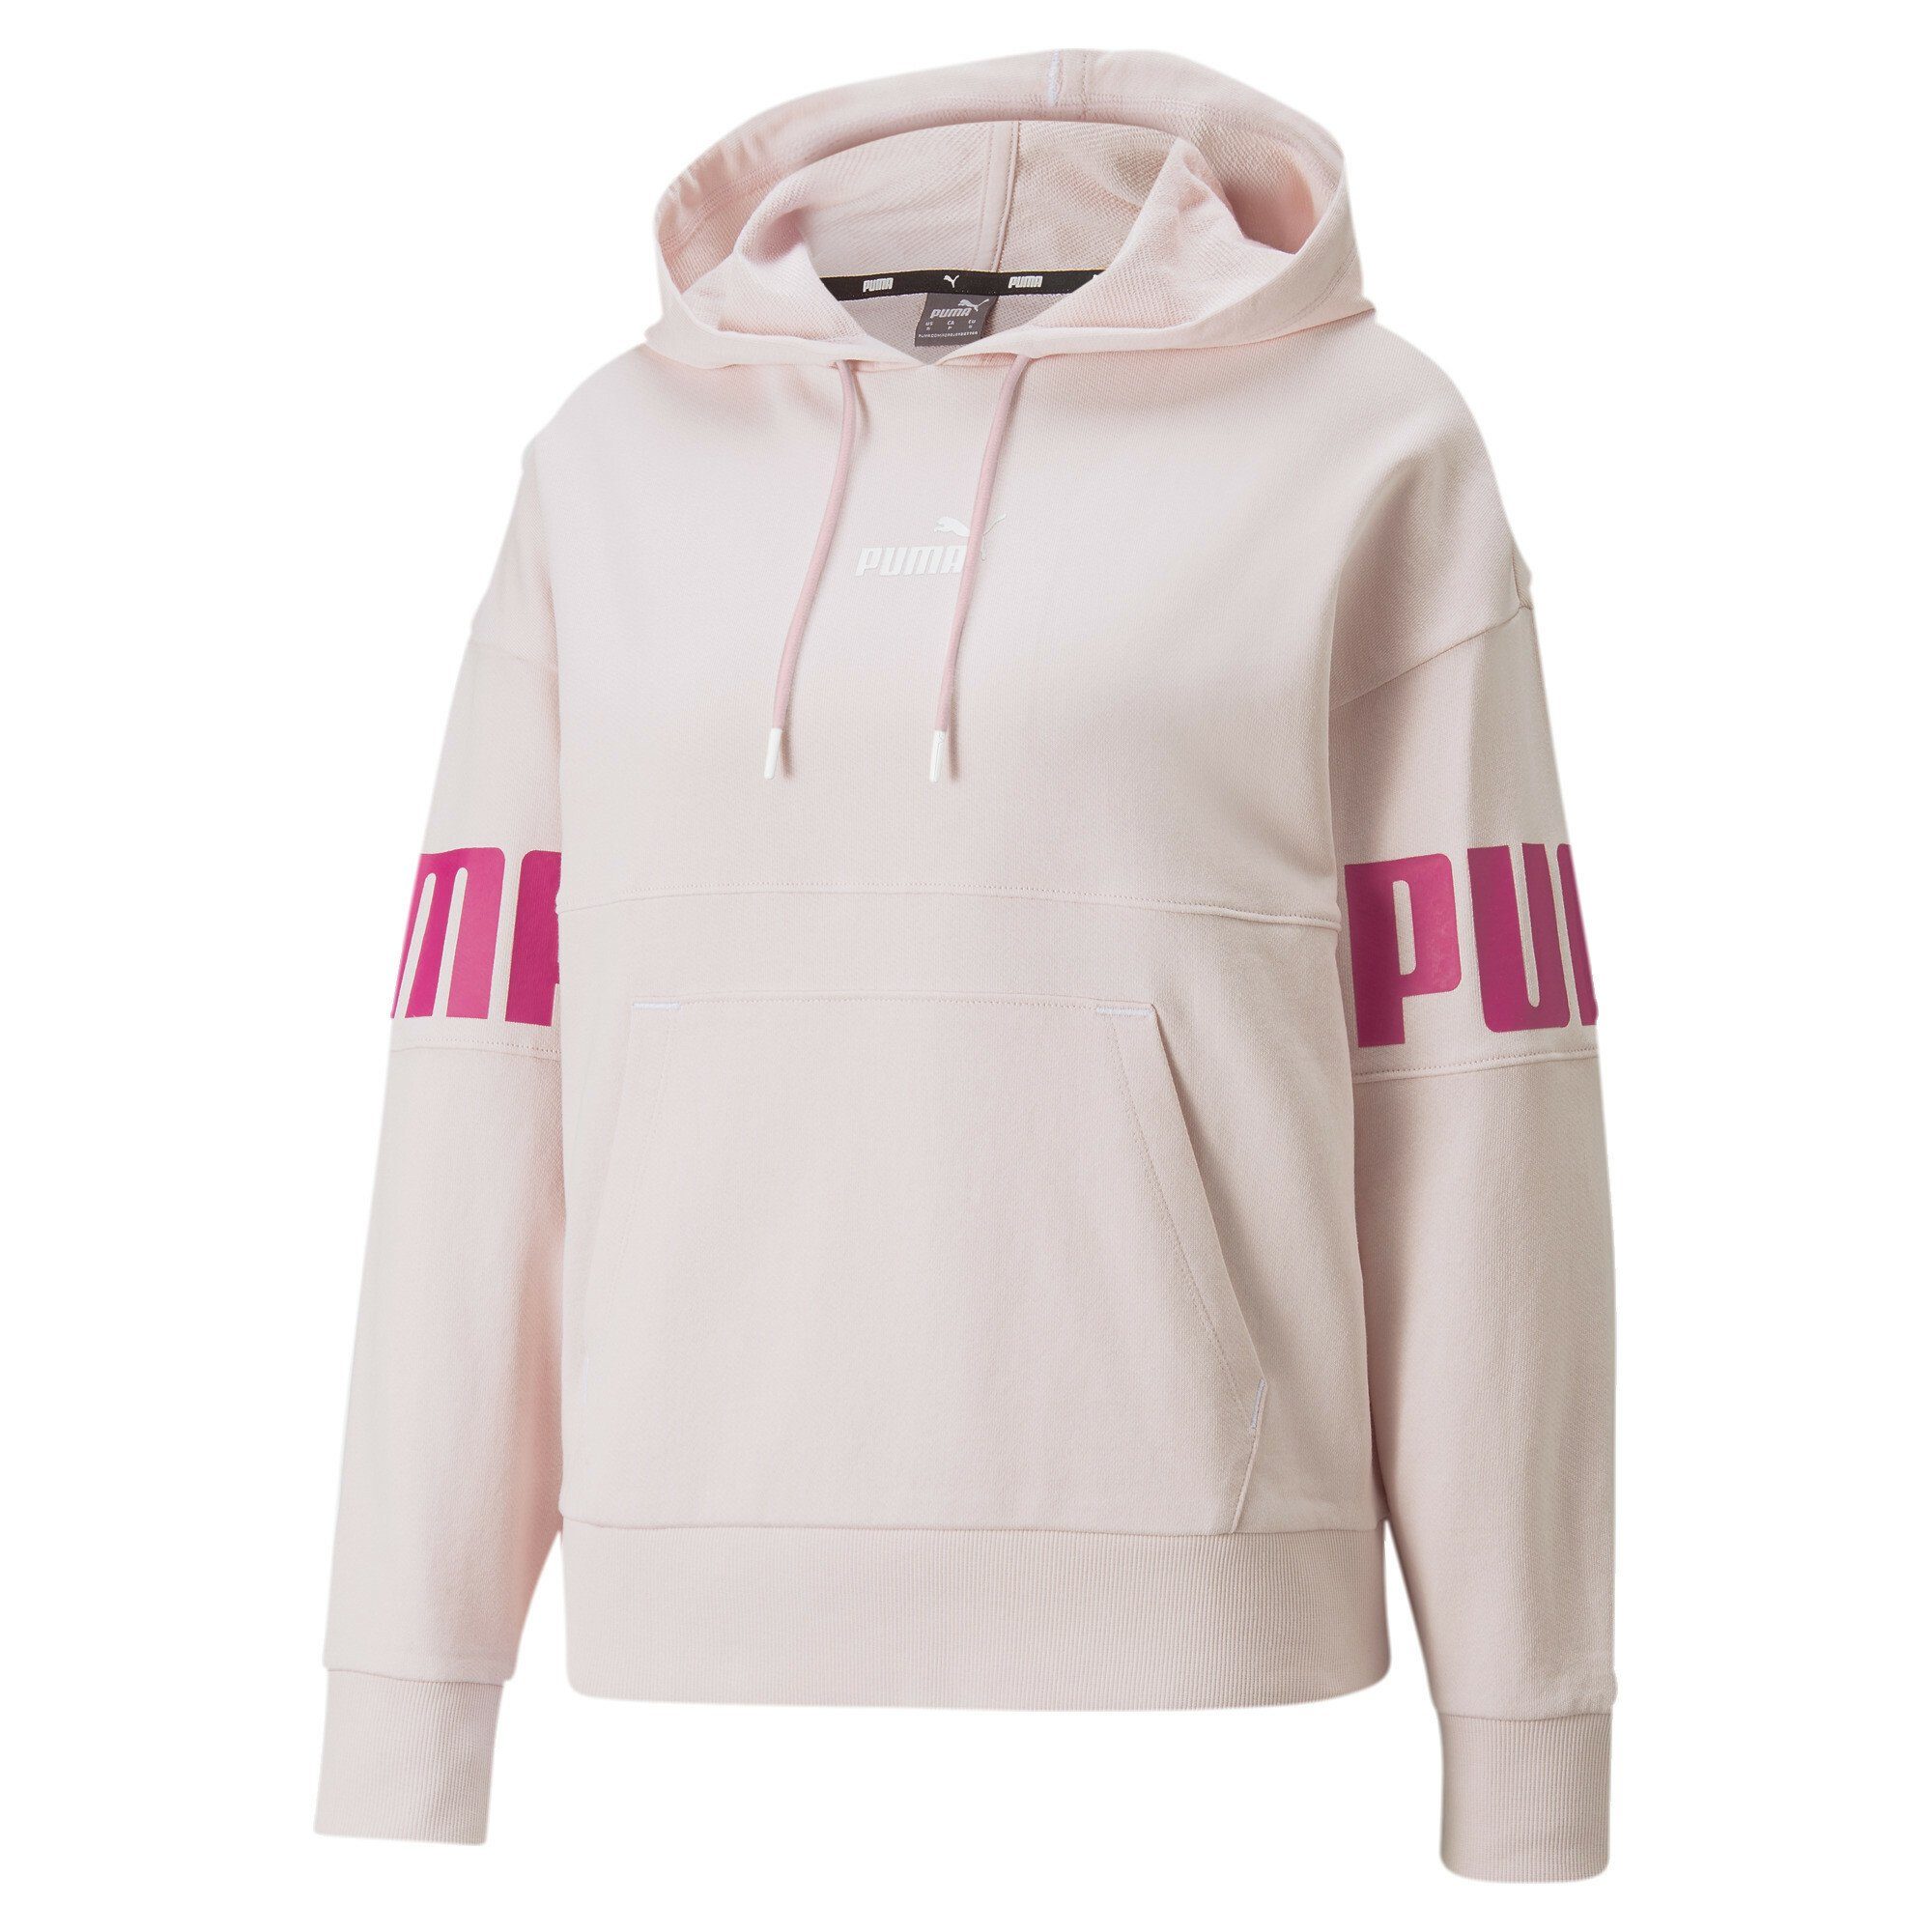 PUMA Sweater »Power Damen Hoodie Regular« kaufen | OTTO